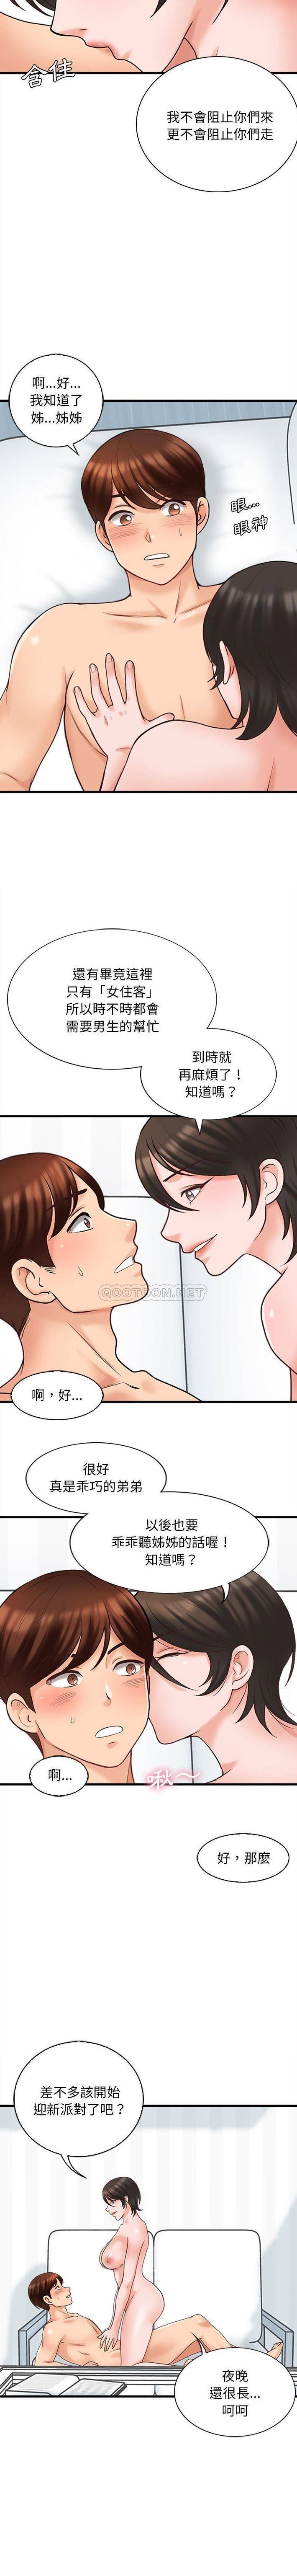 韩国污漫画 幸福公寓 第7话 11